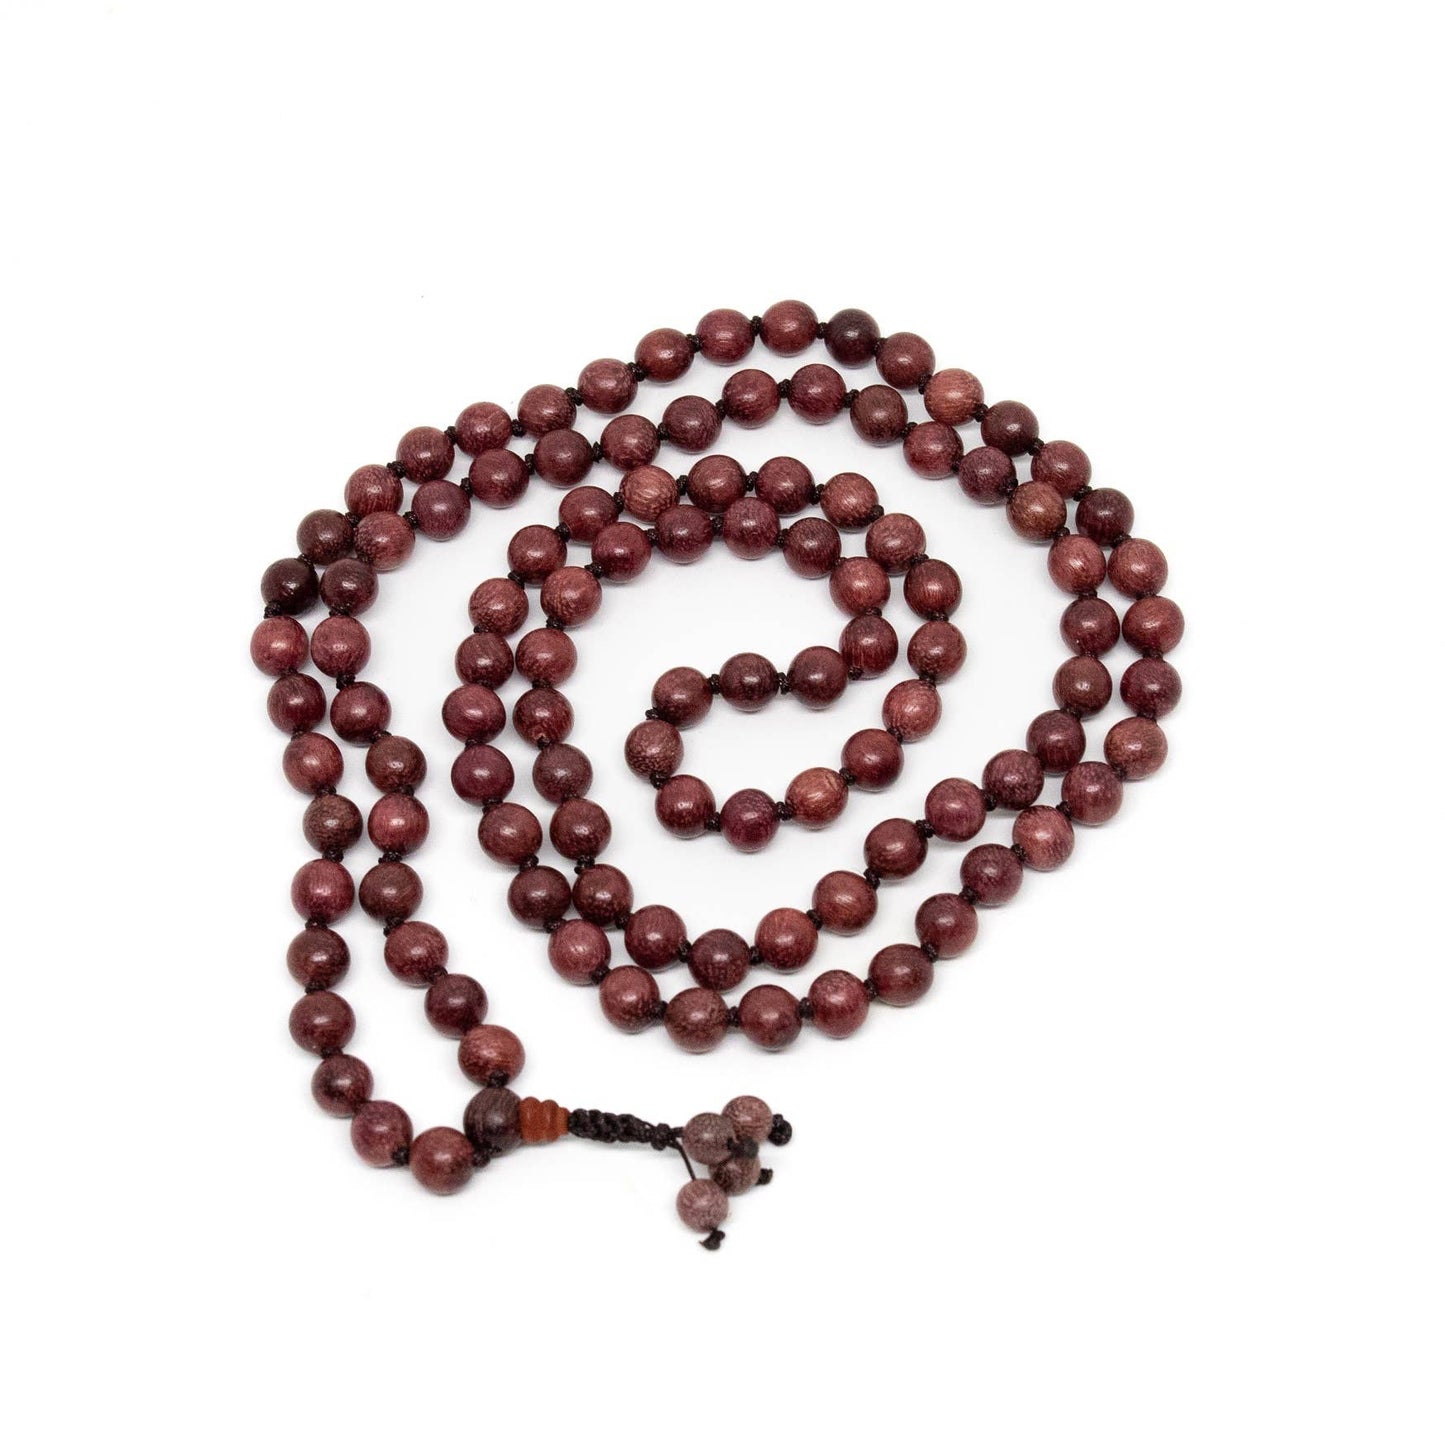 Purpleheart Wood Knotted 108 Bead Mala Prayer Beads - 8mm (1 Pack)